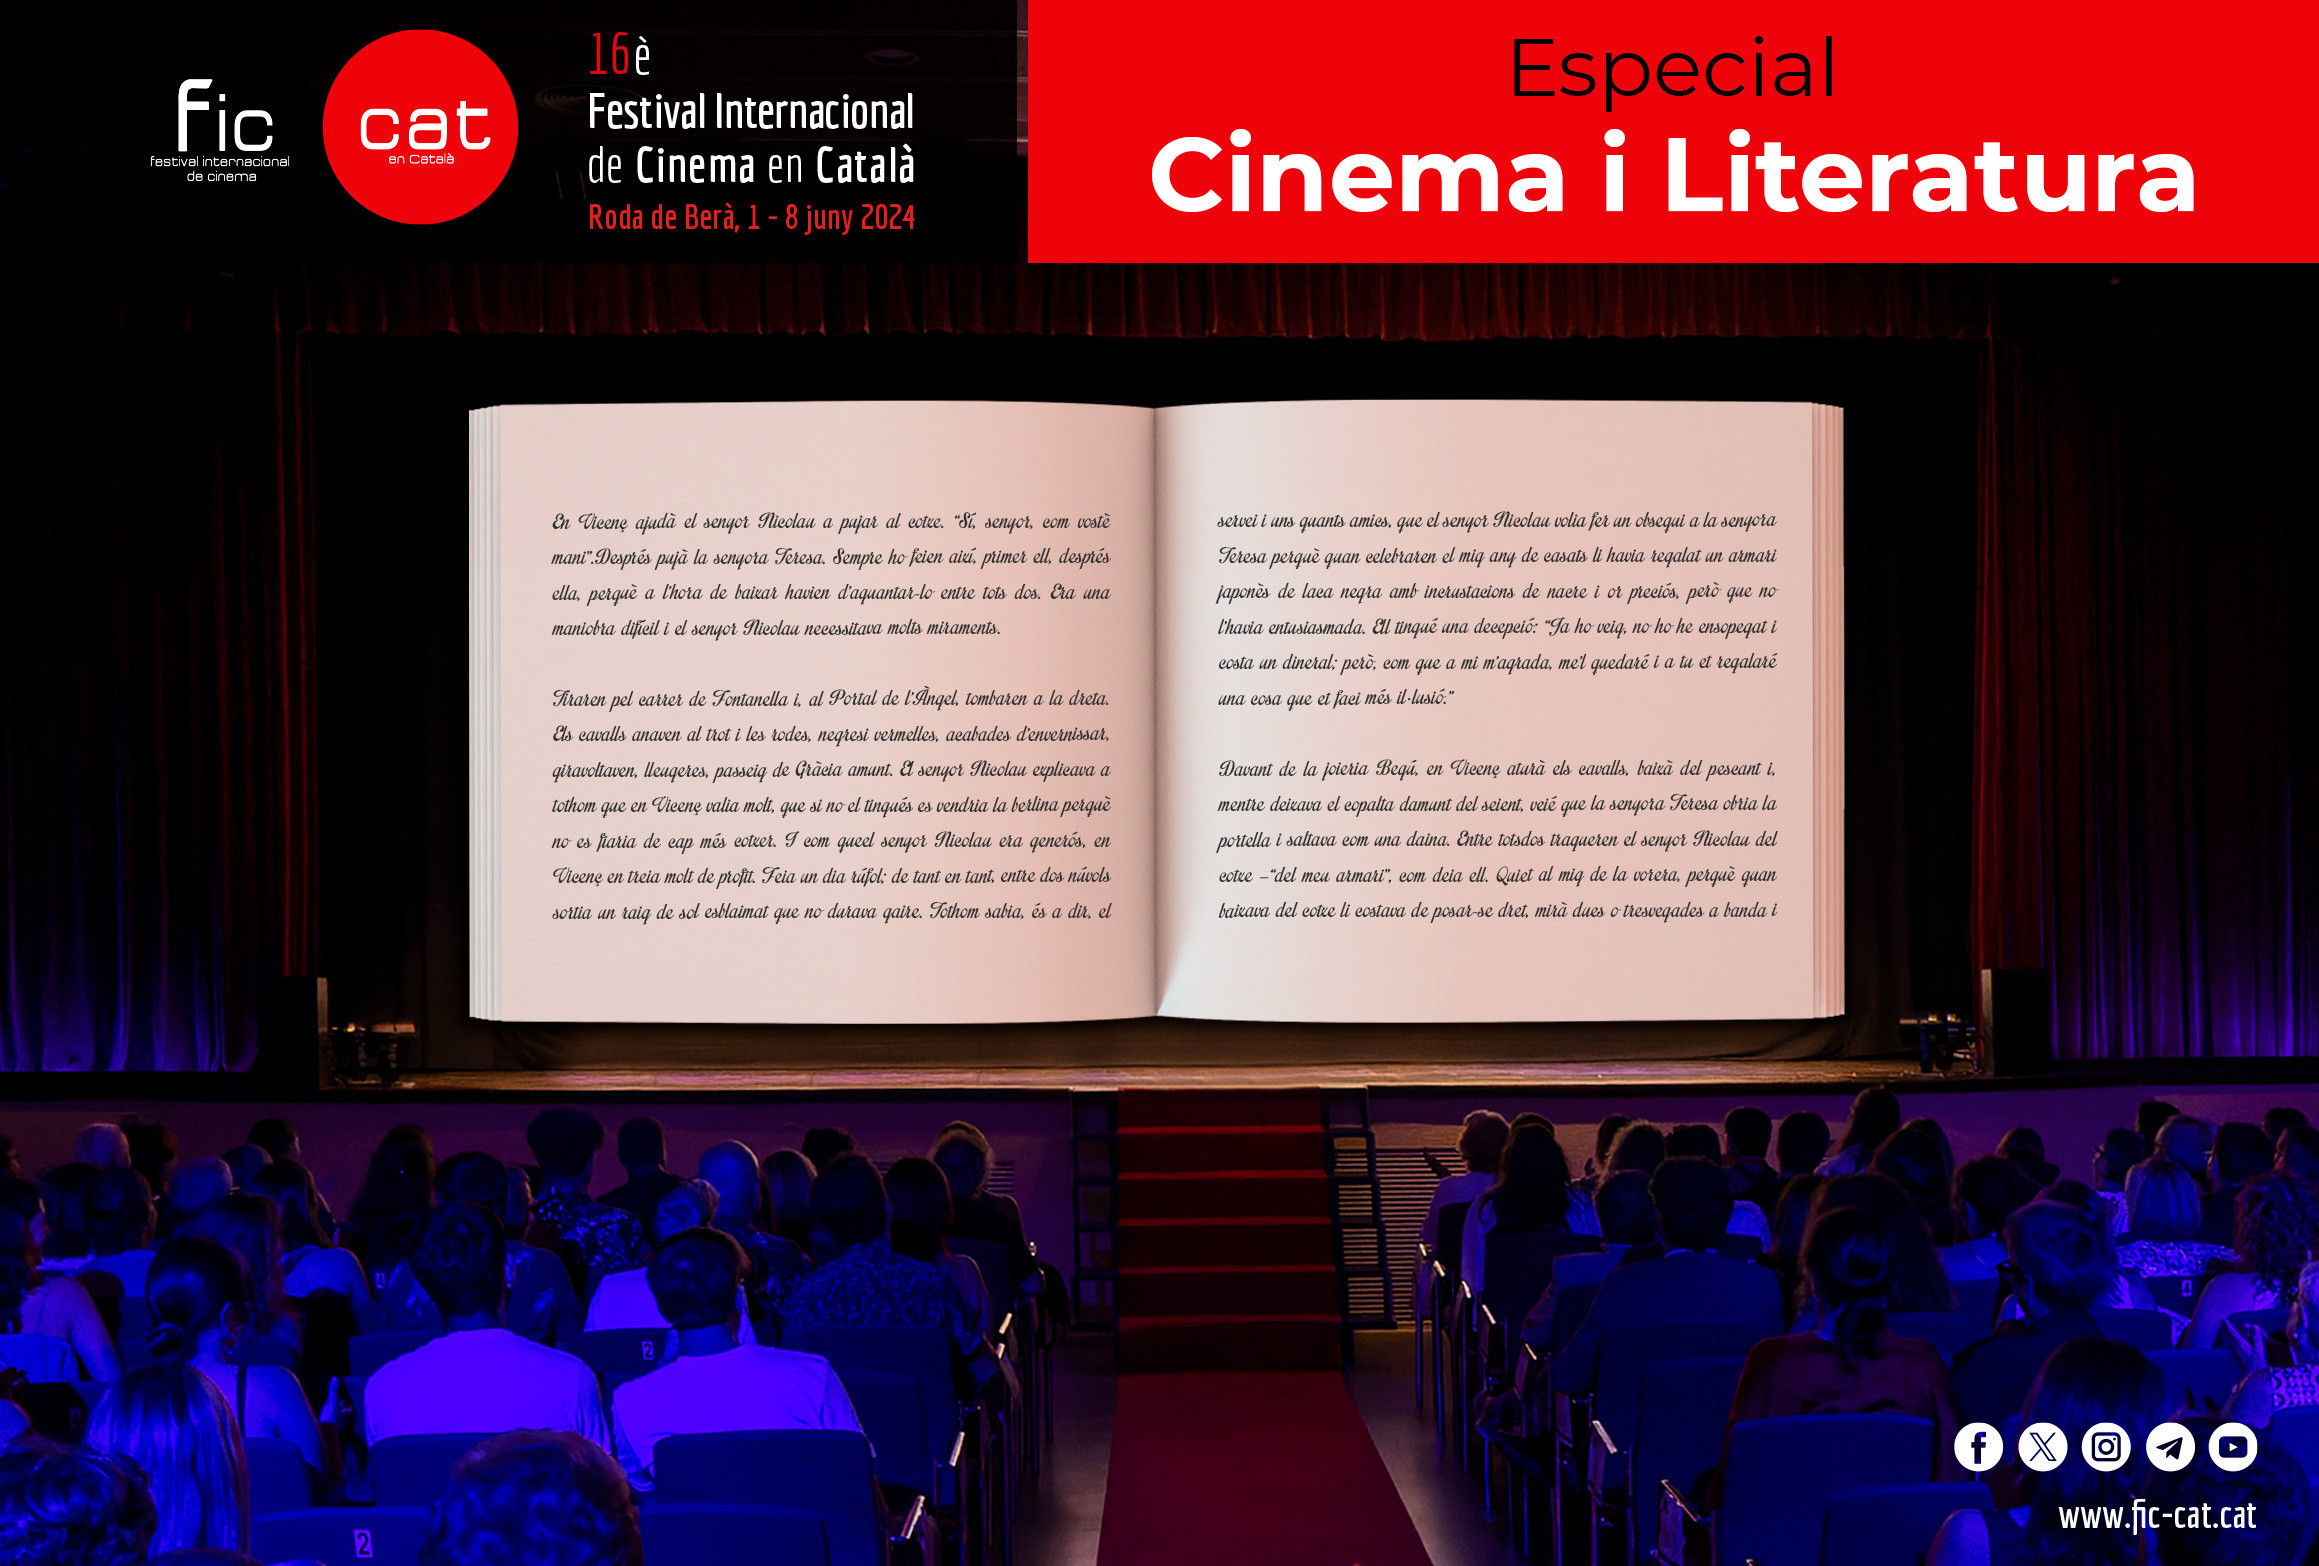 "Cinema i Literatura" centraran el FIC-CAT 2024 